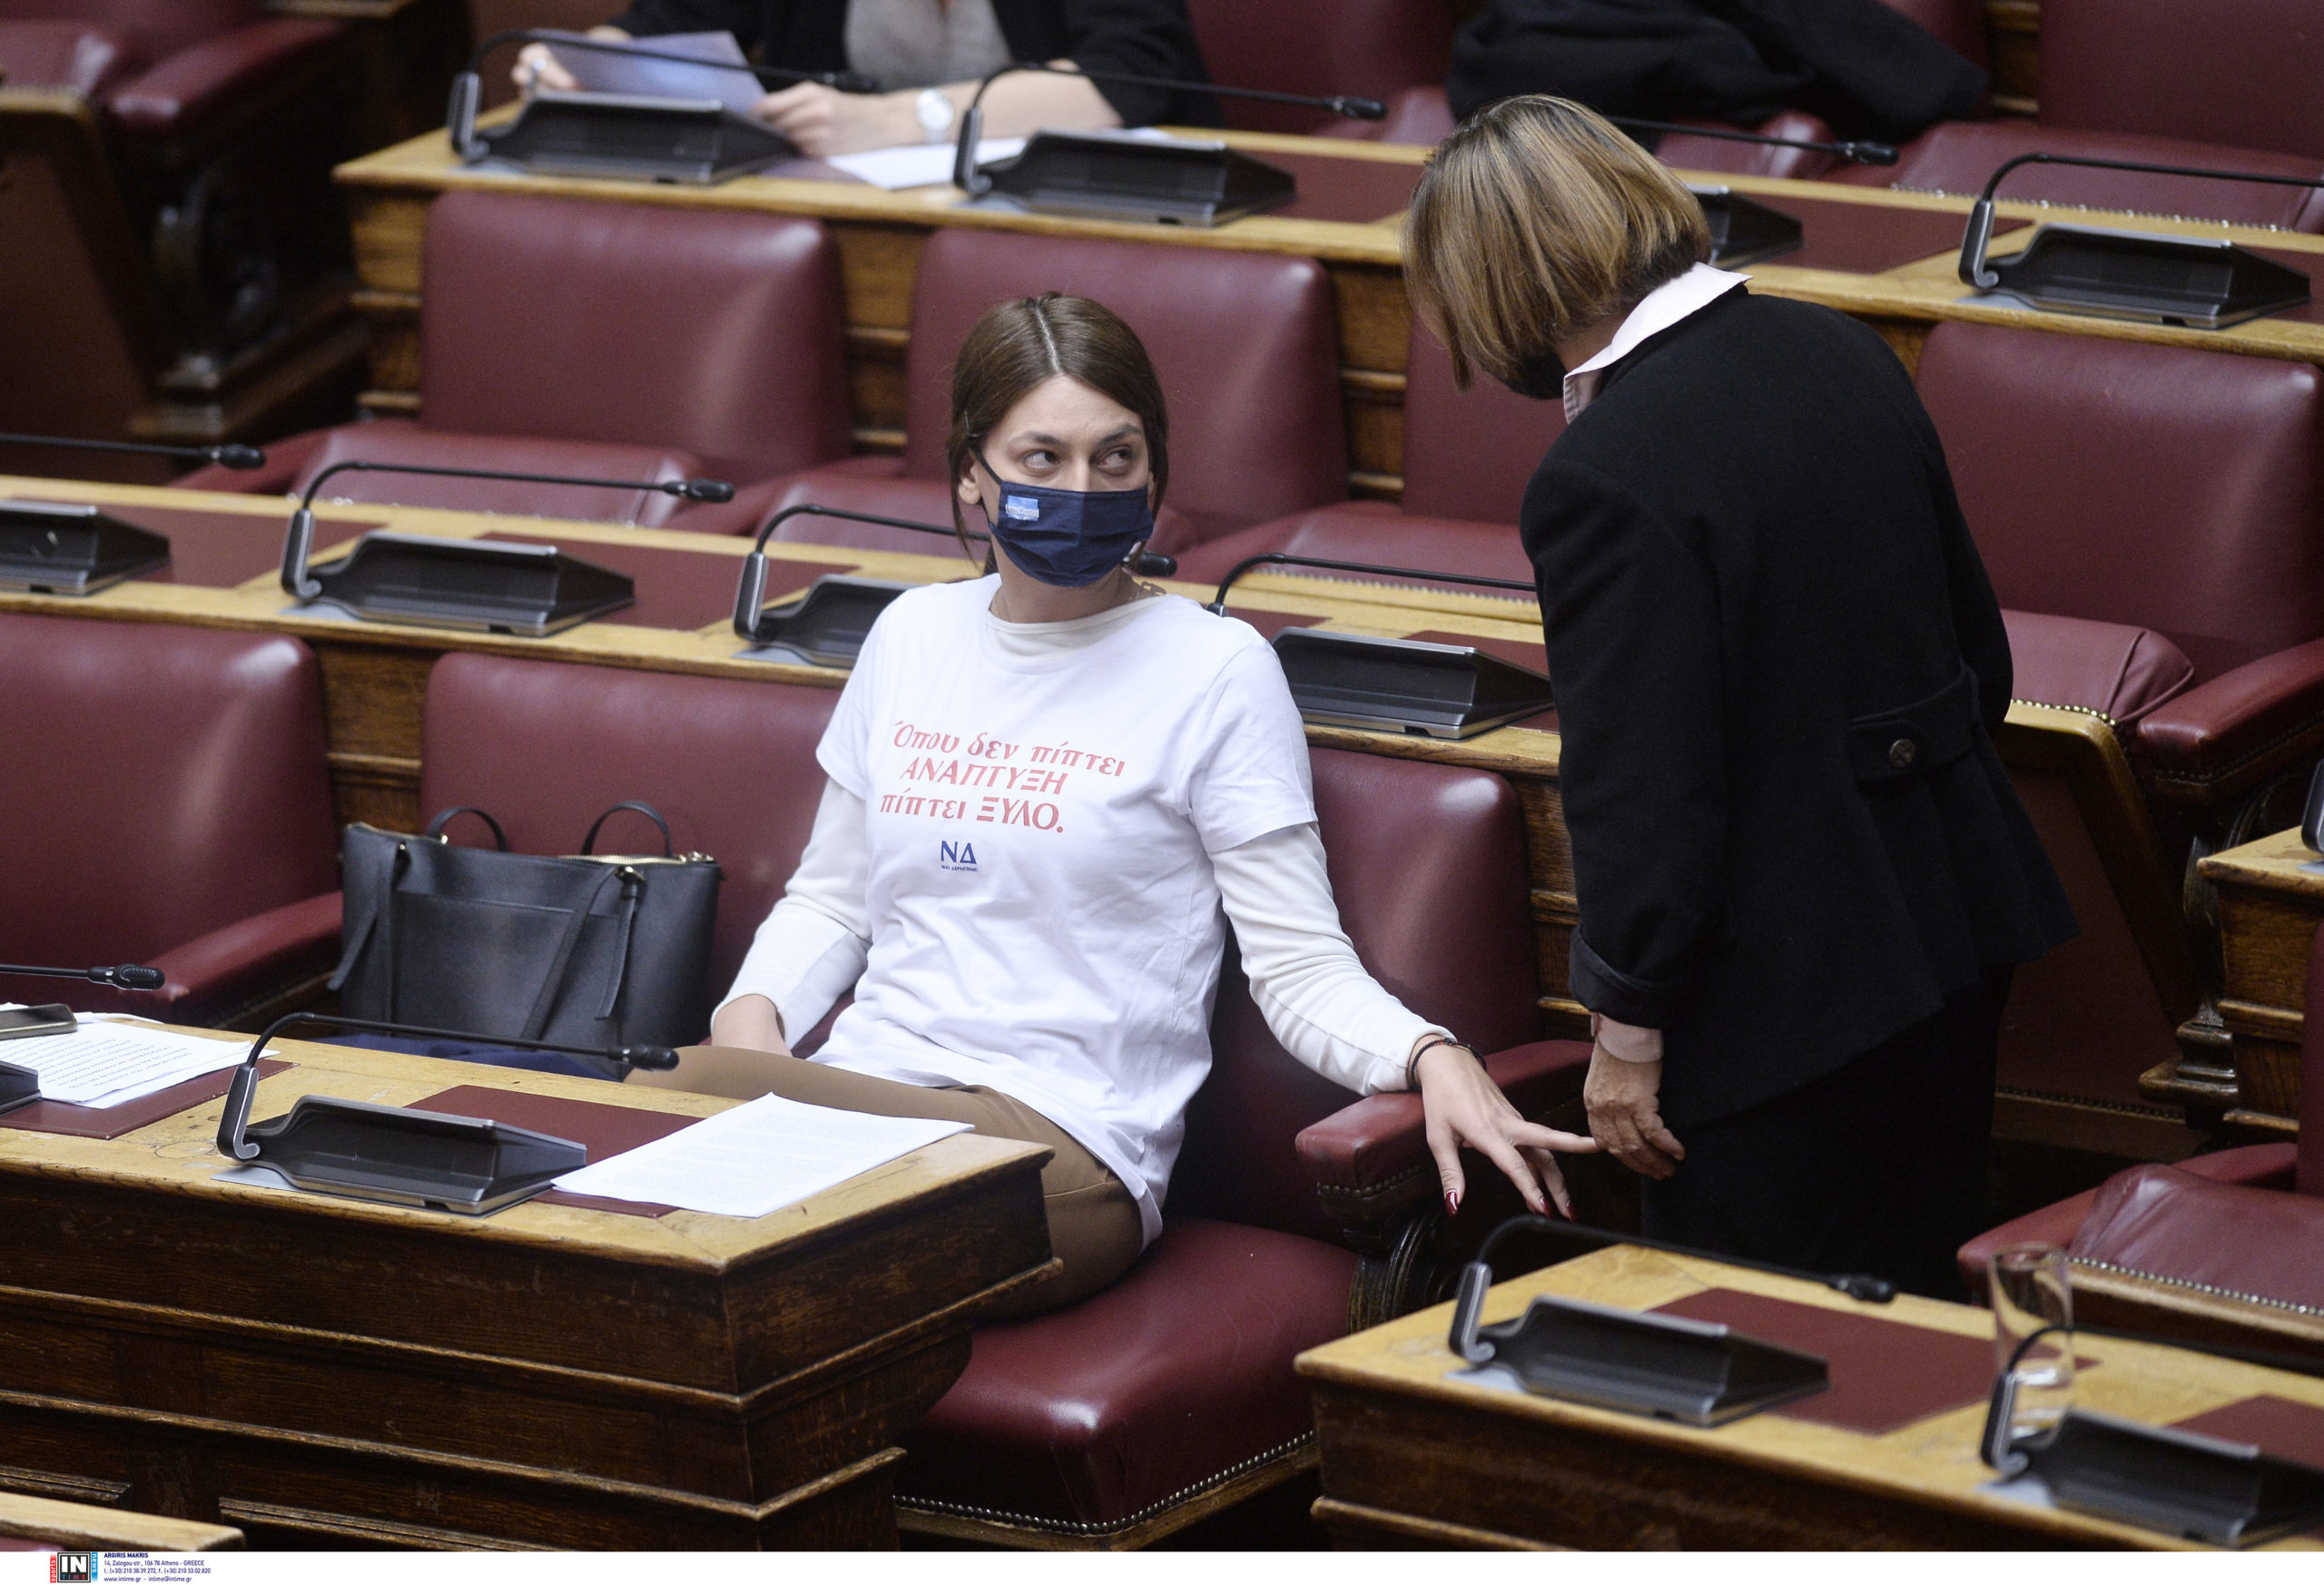 Μαρία Απατζίδη: Η βουλευτής του ΜέΡΑ25 που εμφανίστηκε στη Βουλή με μπλούζα κατά της αστυνομικής βίας